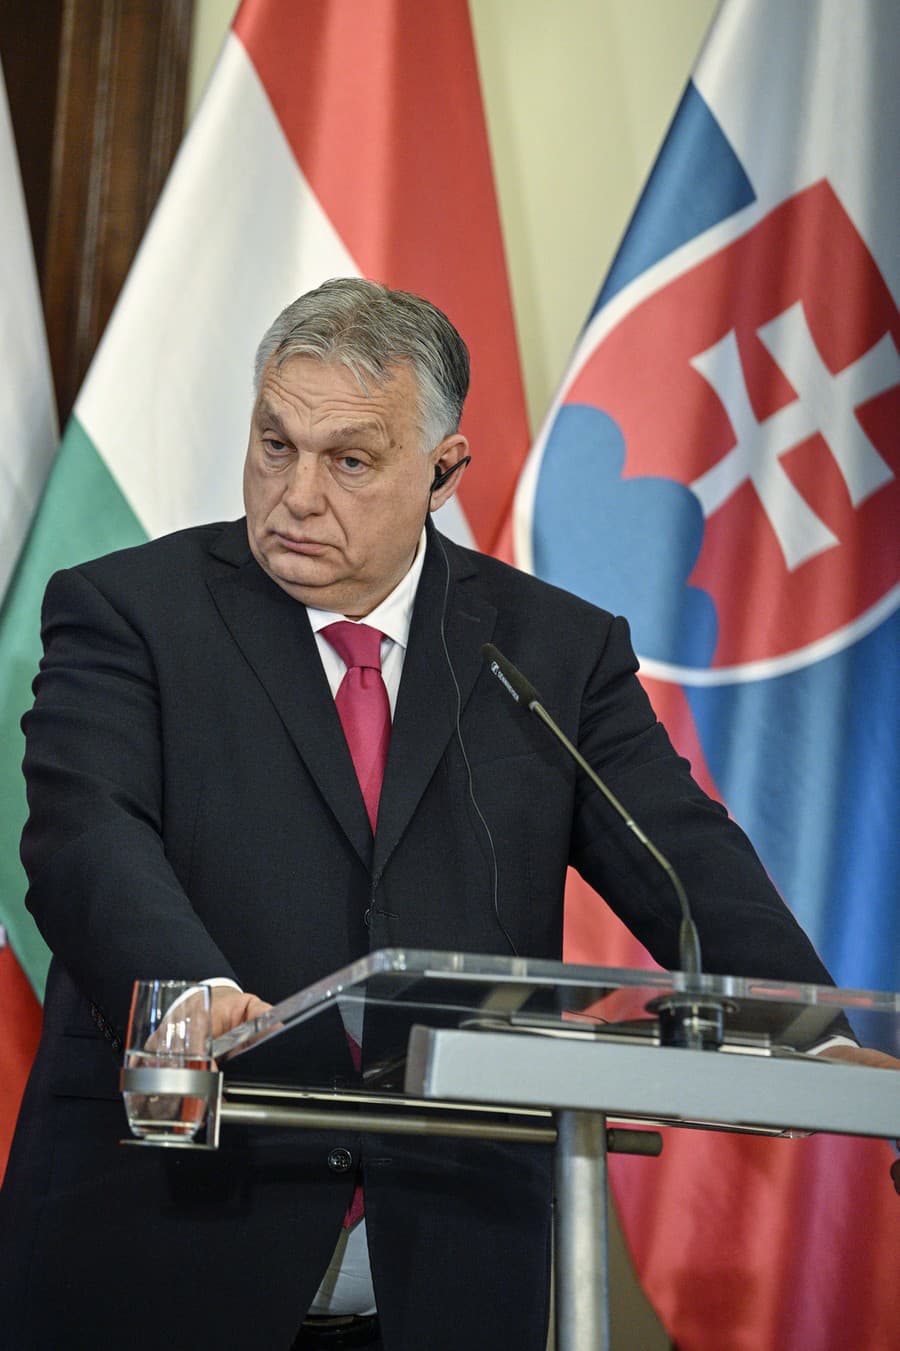 Predseda vlády Maďarska Viktor